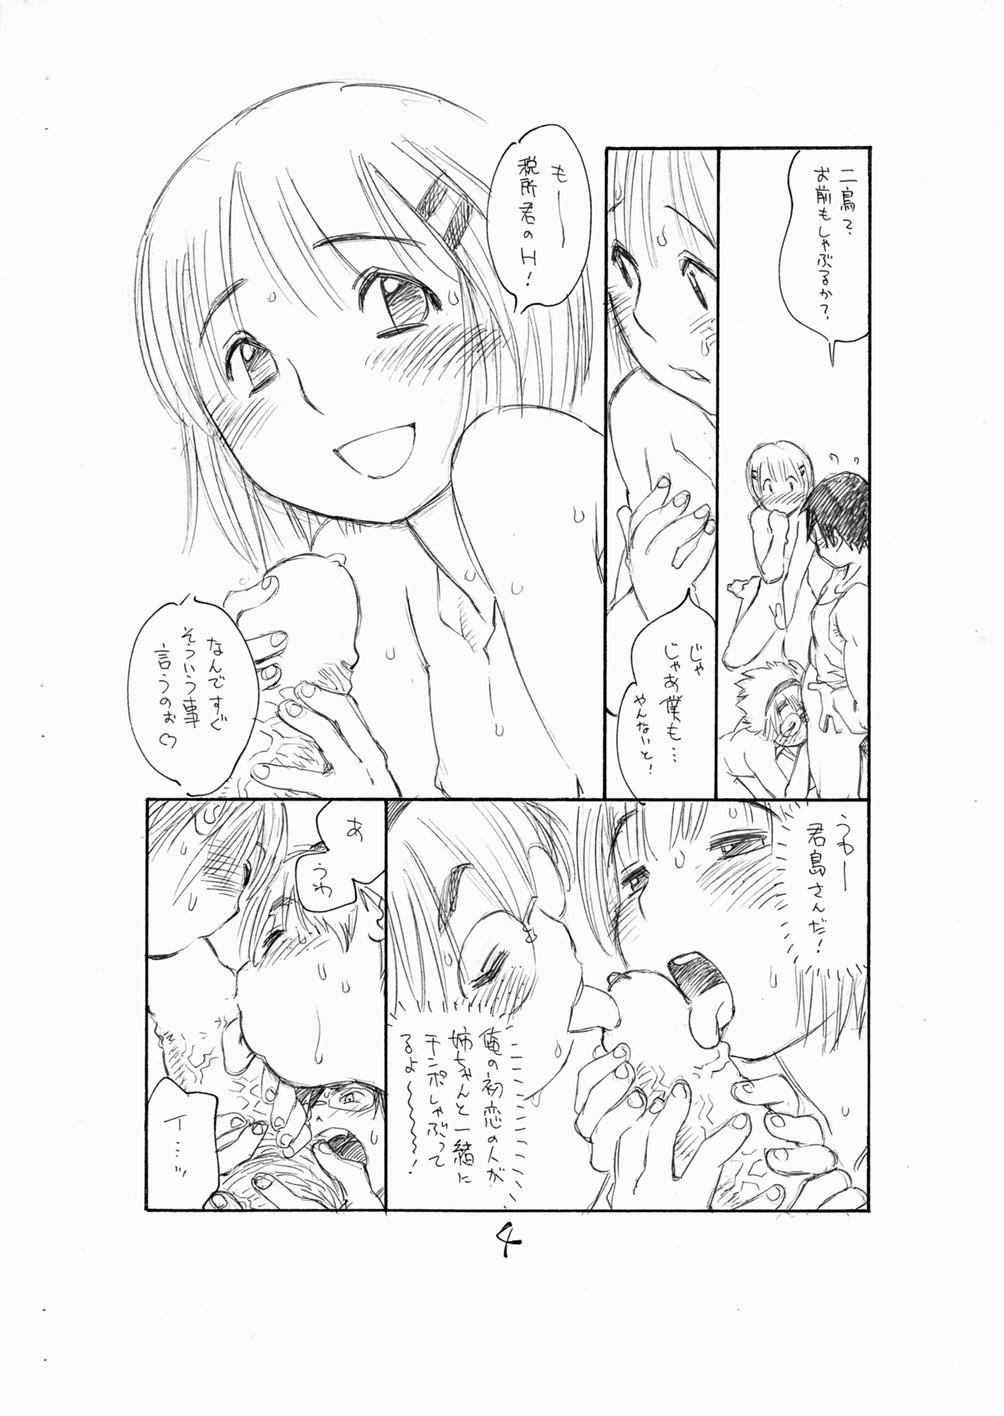 Dicksucking Bokutachi Otokonoko 3 - Hourou musuko Cuckolding - Page 6